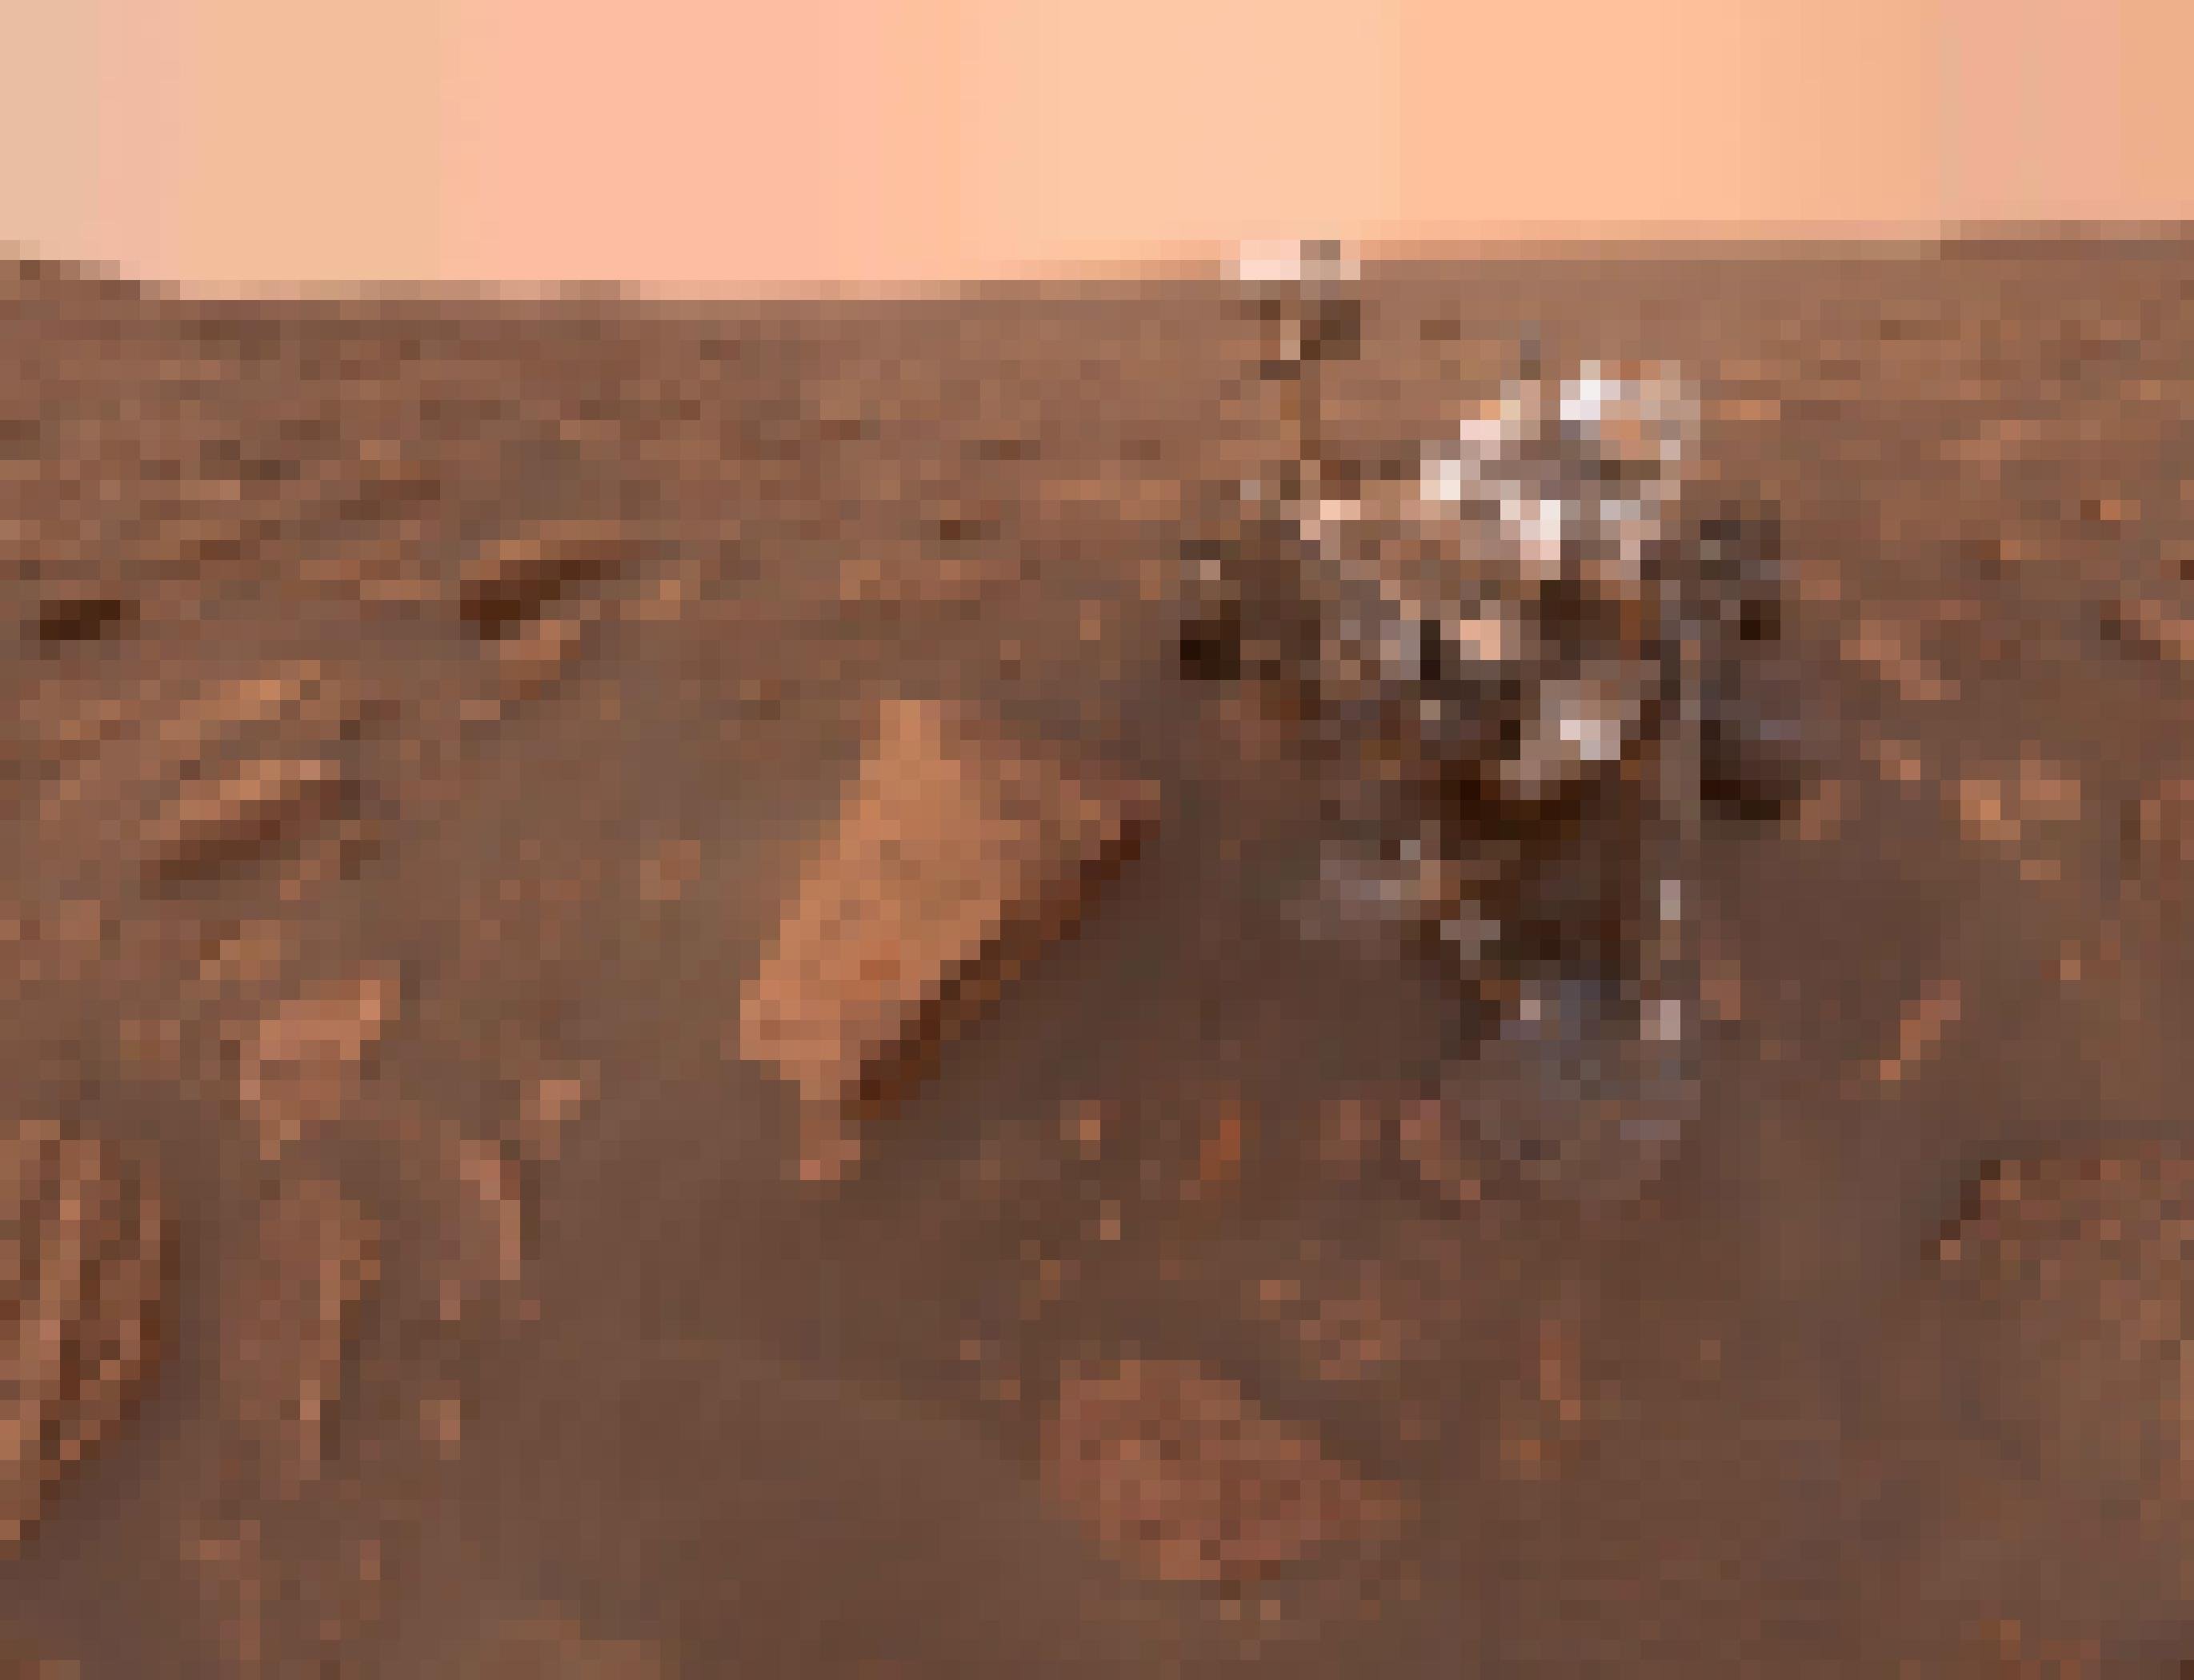 Bild von einem Mars-Mobil.